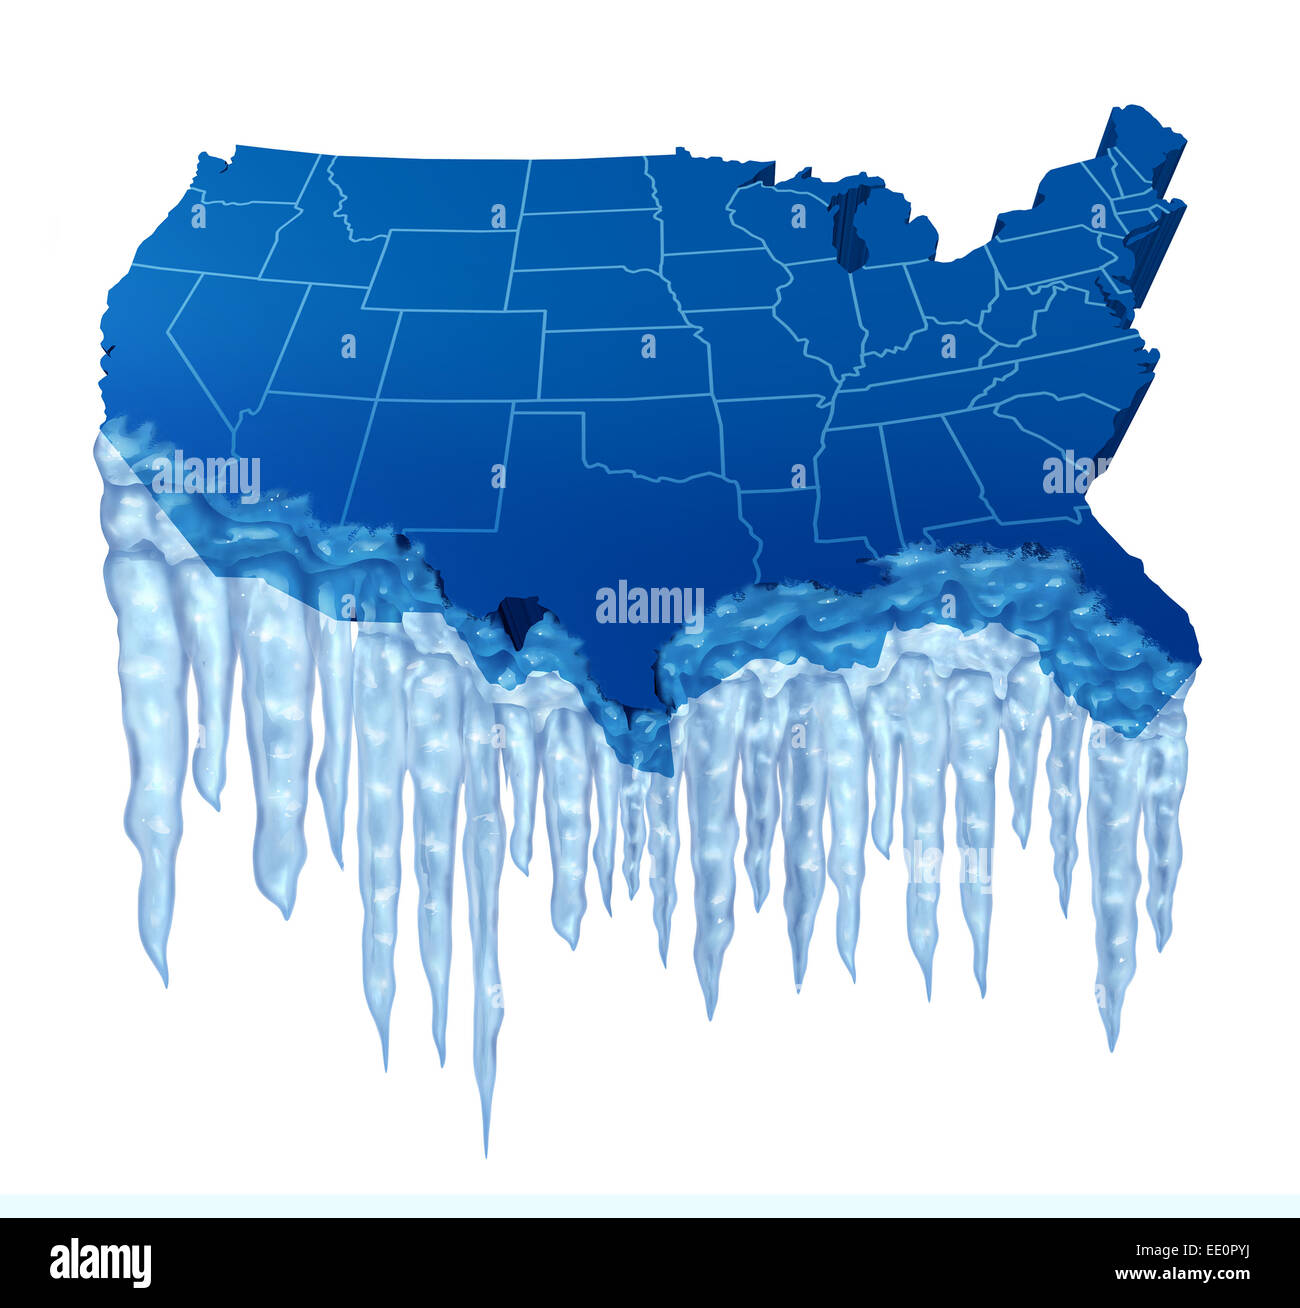 Deep Freeze americana y la helada temperatura en el concepto de Estados Unidos como un mapa azul de América con hielo y carámbanos. Foto de stock